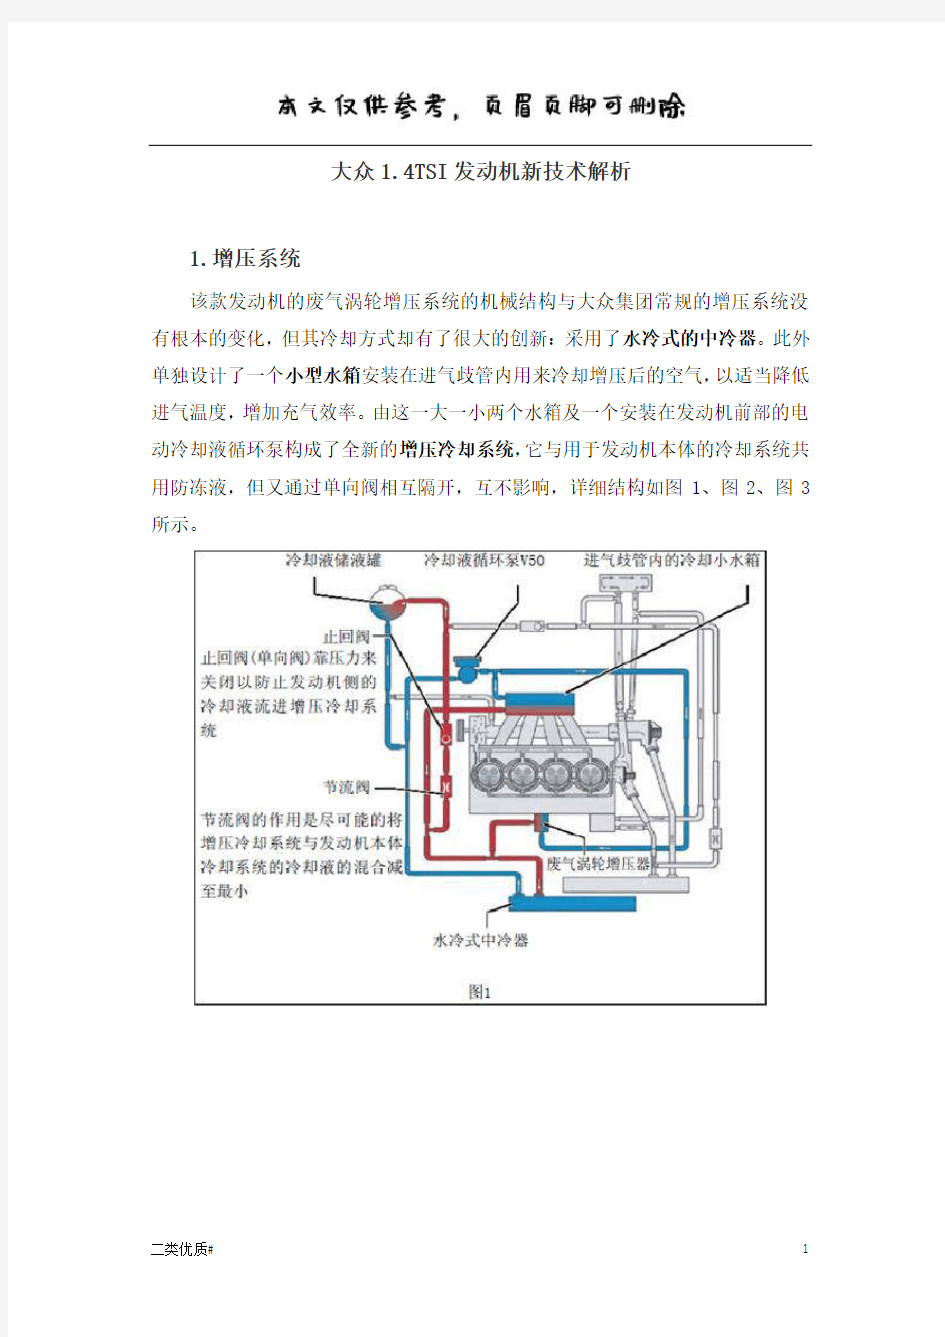 大众1.4TSI发动机新技术解析(增压冷却系统和双节温器)(优选材料)